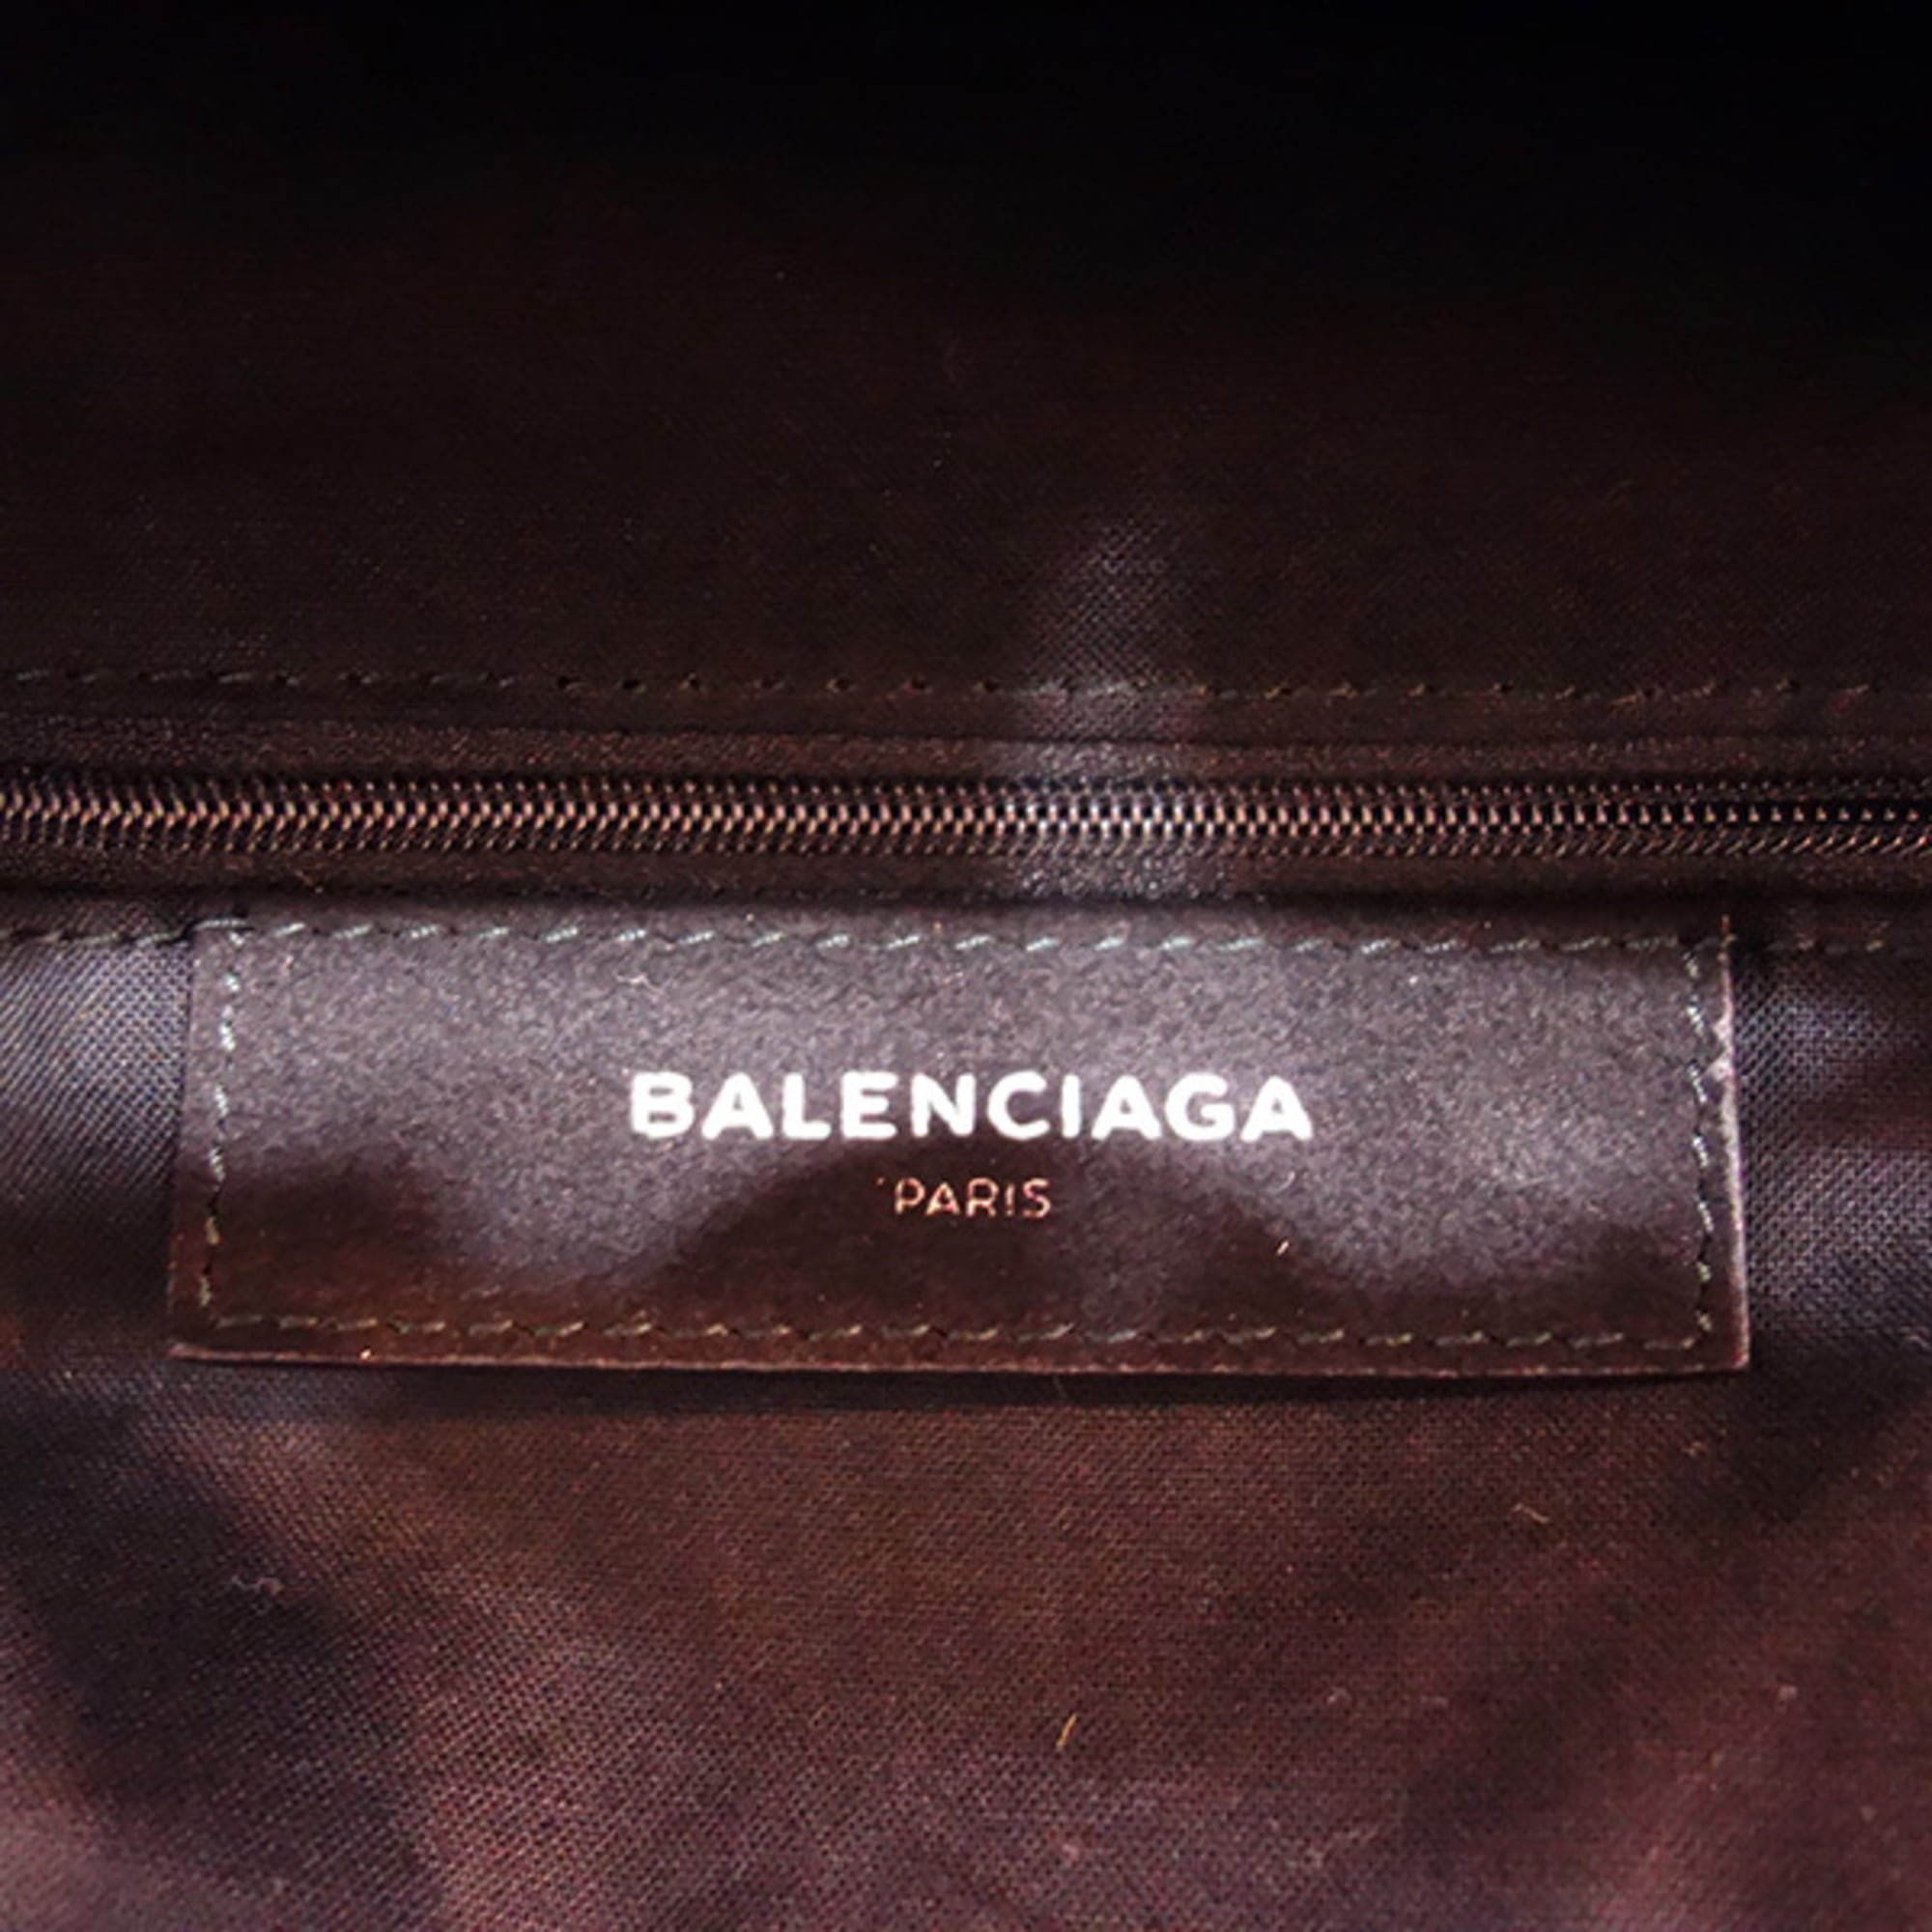 Balenciaga Handbags  Bergdorf Goodman